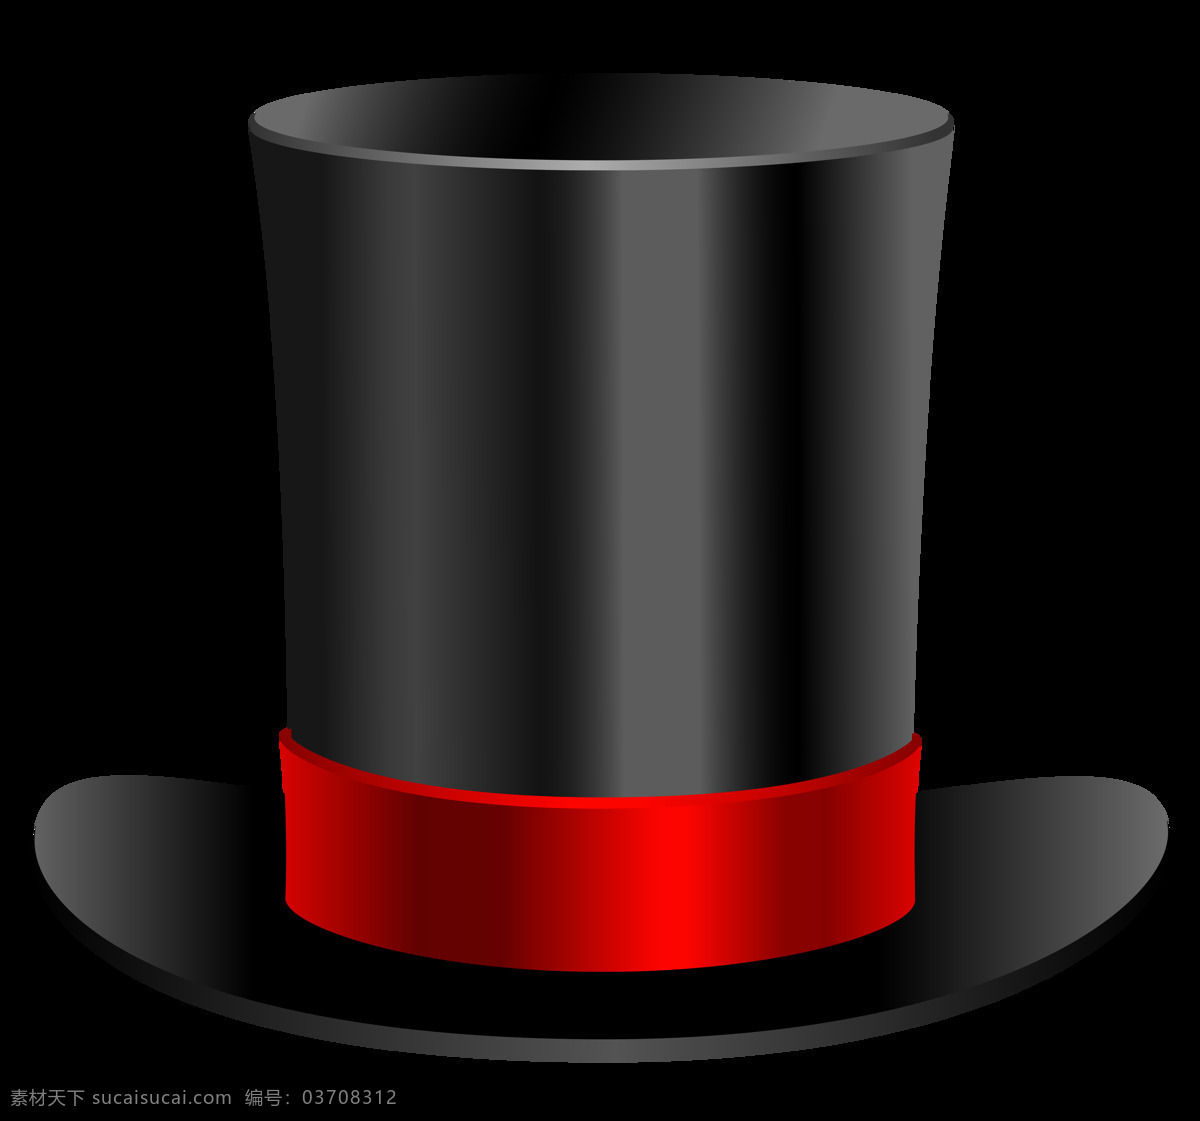 高清 手绘 魔术 帽 免 抠 透明 图 层 魔术师帽子 魔术师帽 魔术帽子 魔术帽简笔画 手绘魔术帽 黑色魔术帽 魔术帽素材 漂亮魔术帽 魔术道具 魔术帽子集合 魔术帽子大全